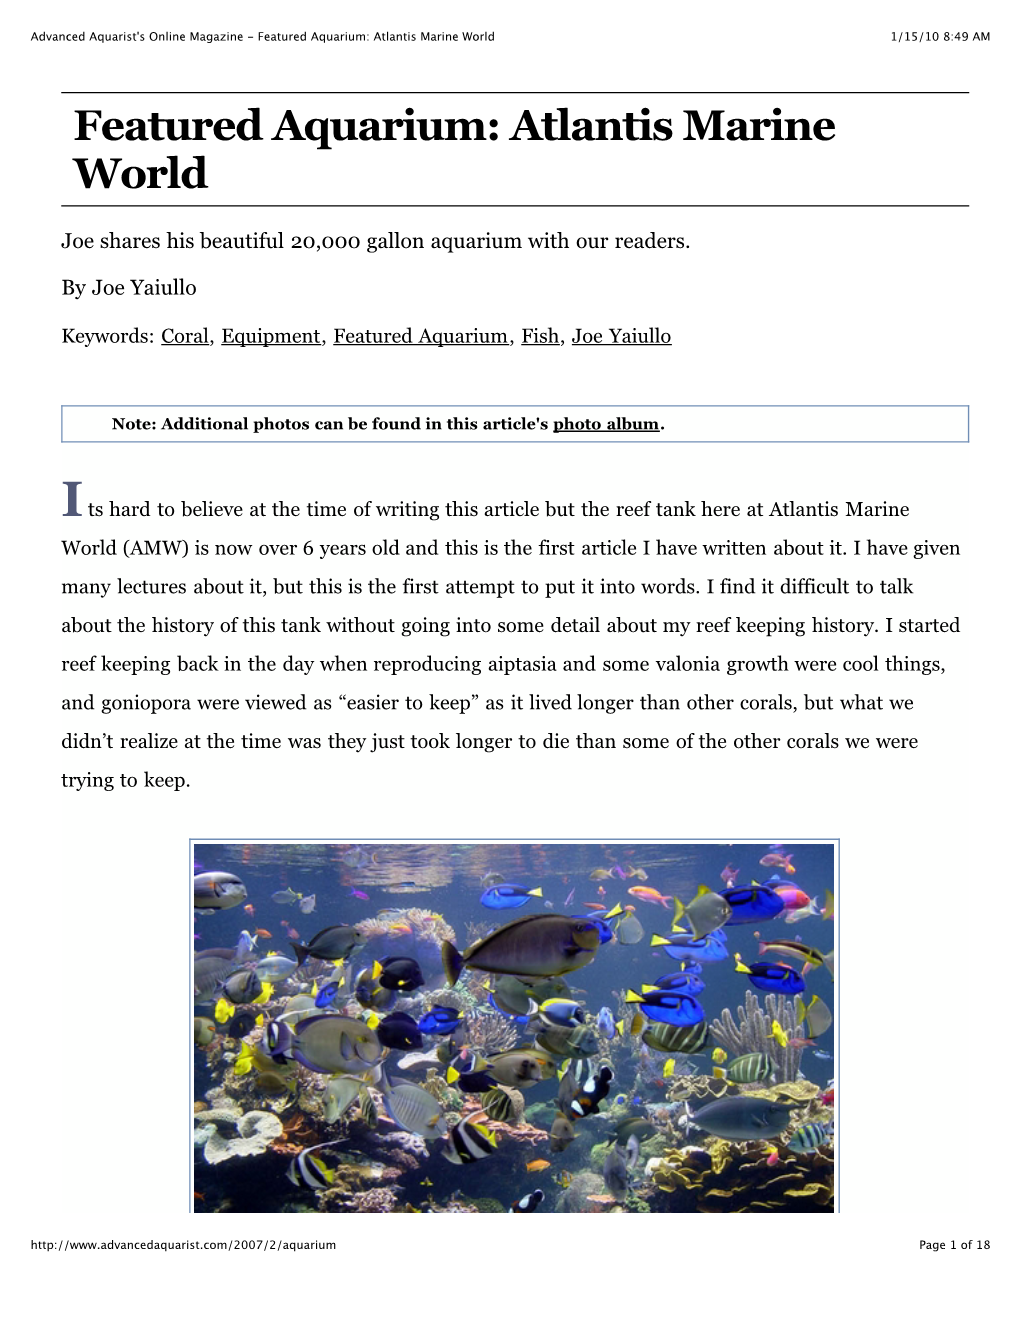 Advanced Aquarist's Online Magazine - Featured Aquarium: Atlantis Marine World 1/15/10 8:49 AM